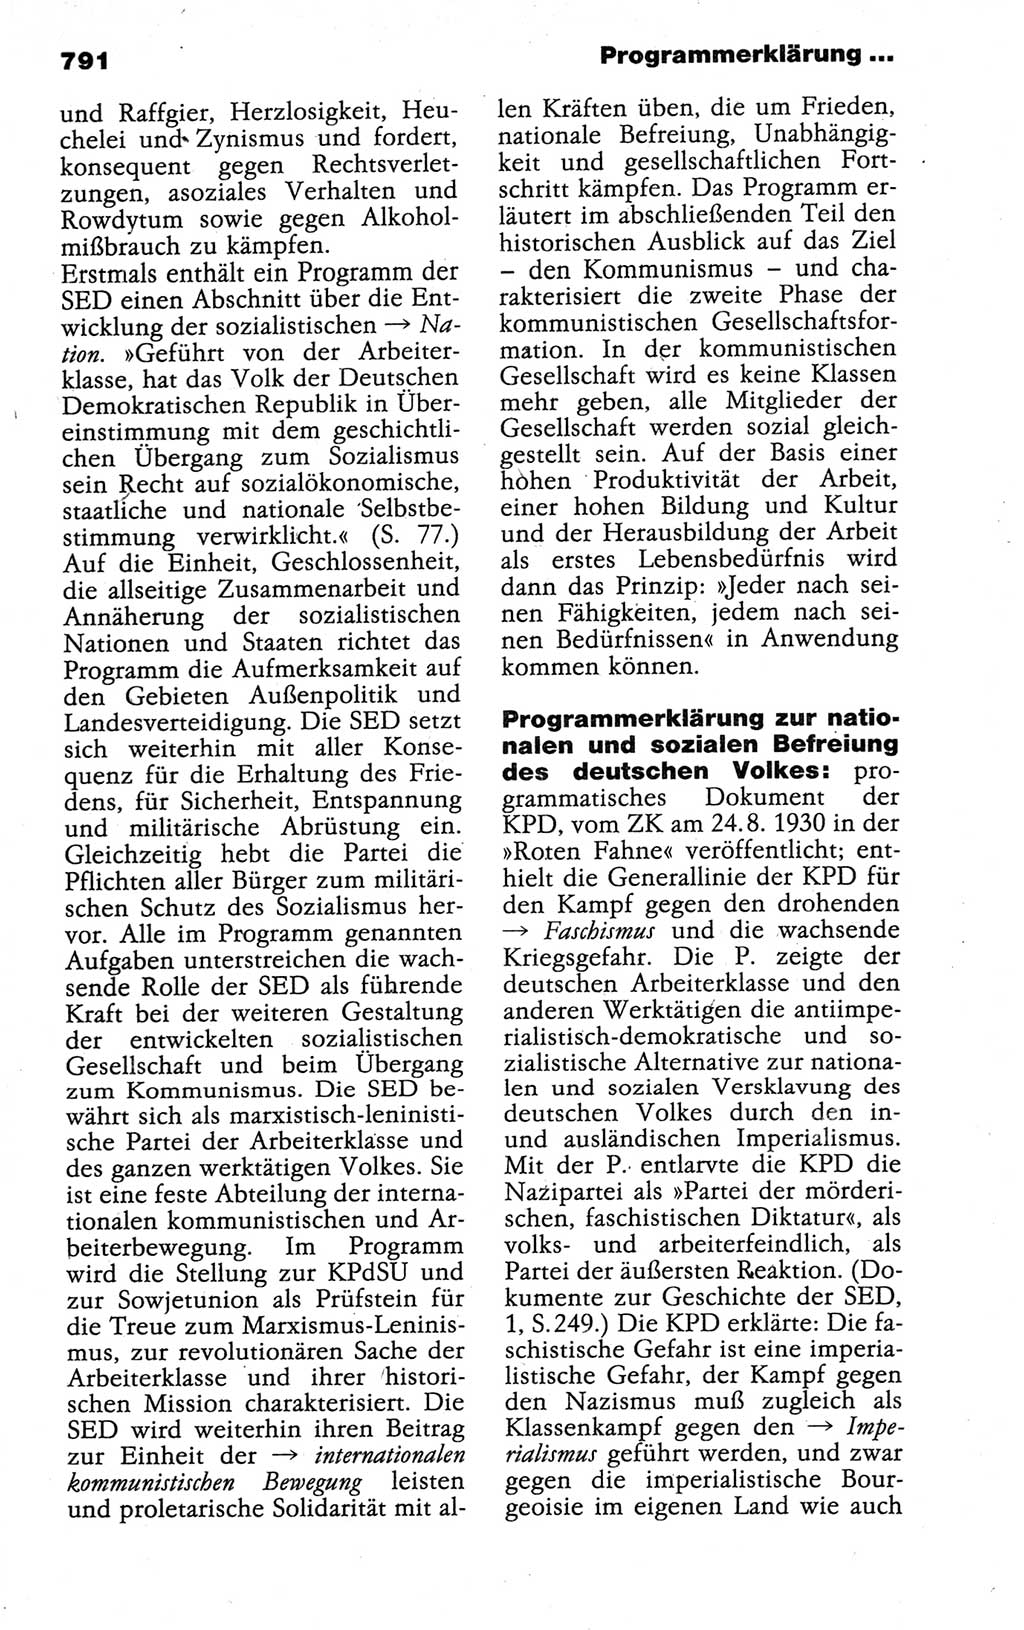 Kleines politisches Wörterbuch [Deutsche Demokratische Republik (DDR)] 1988, Seite 791 (Kl. pol. Wb. DDR 1988, S. 791)